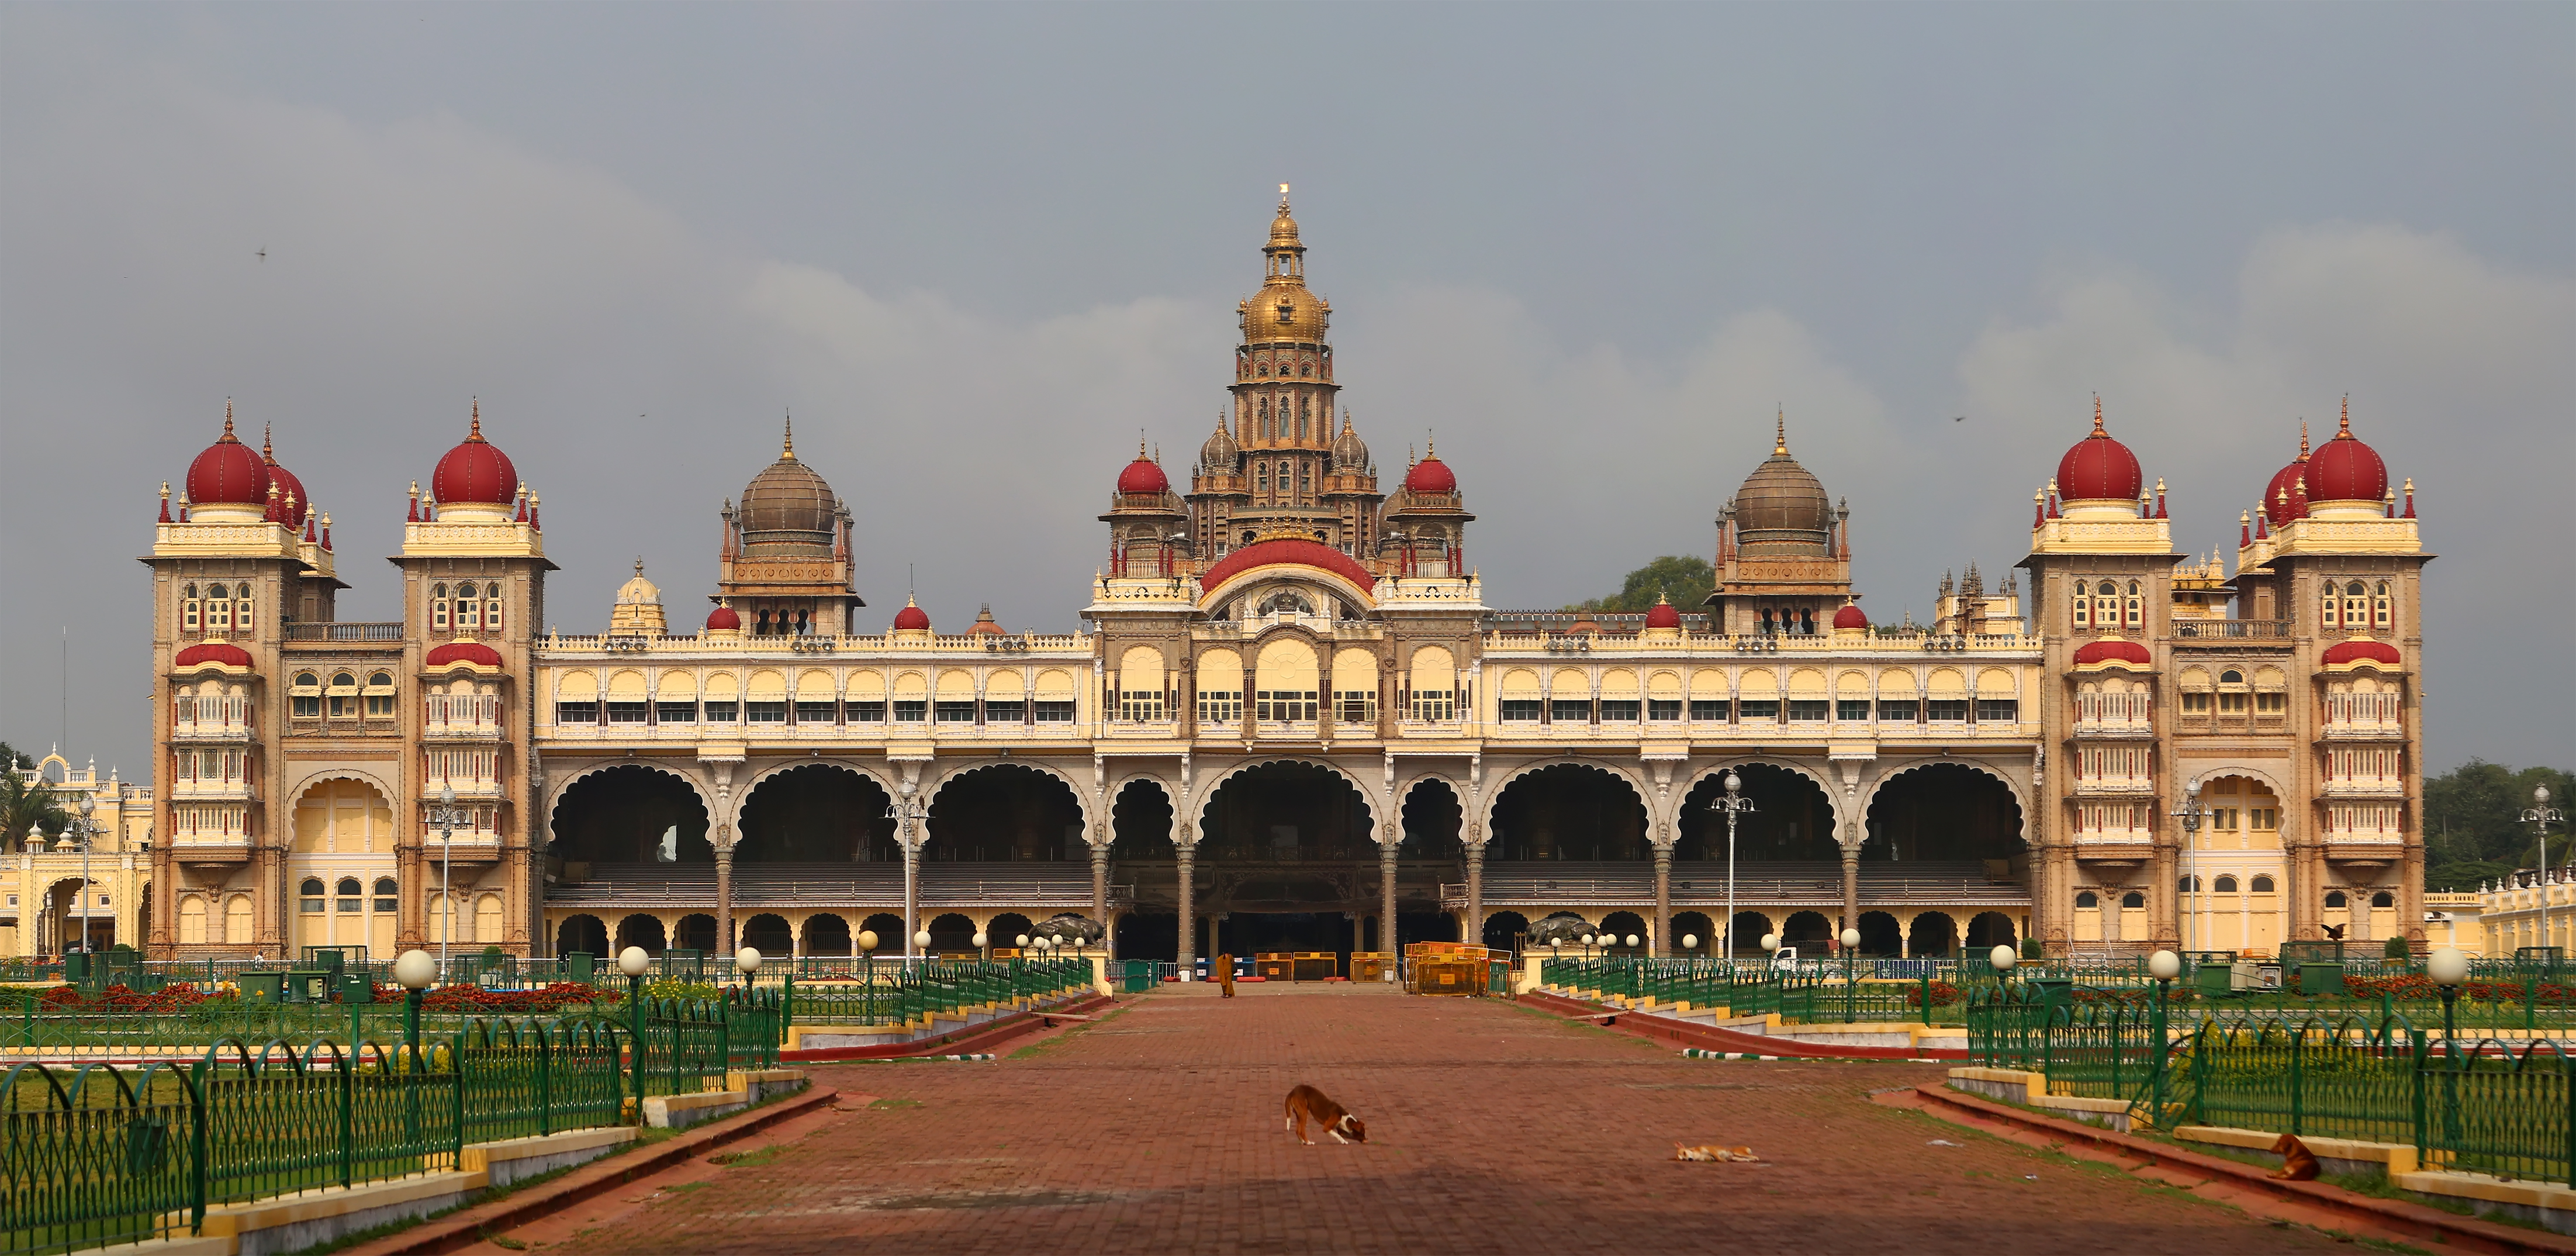 Mysore Palace - Wikipedia